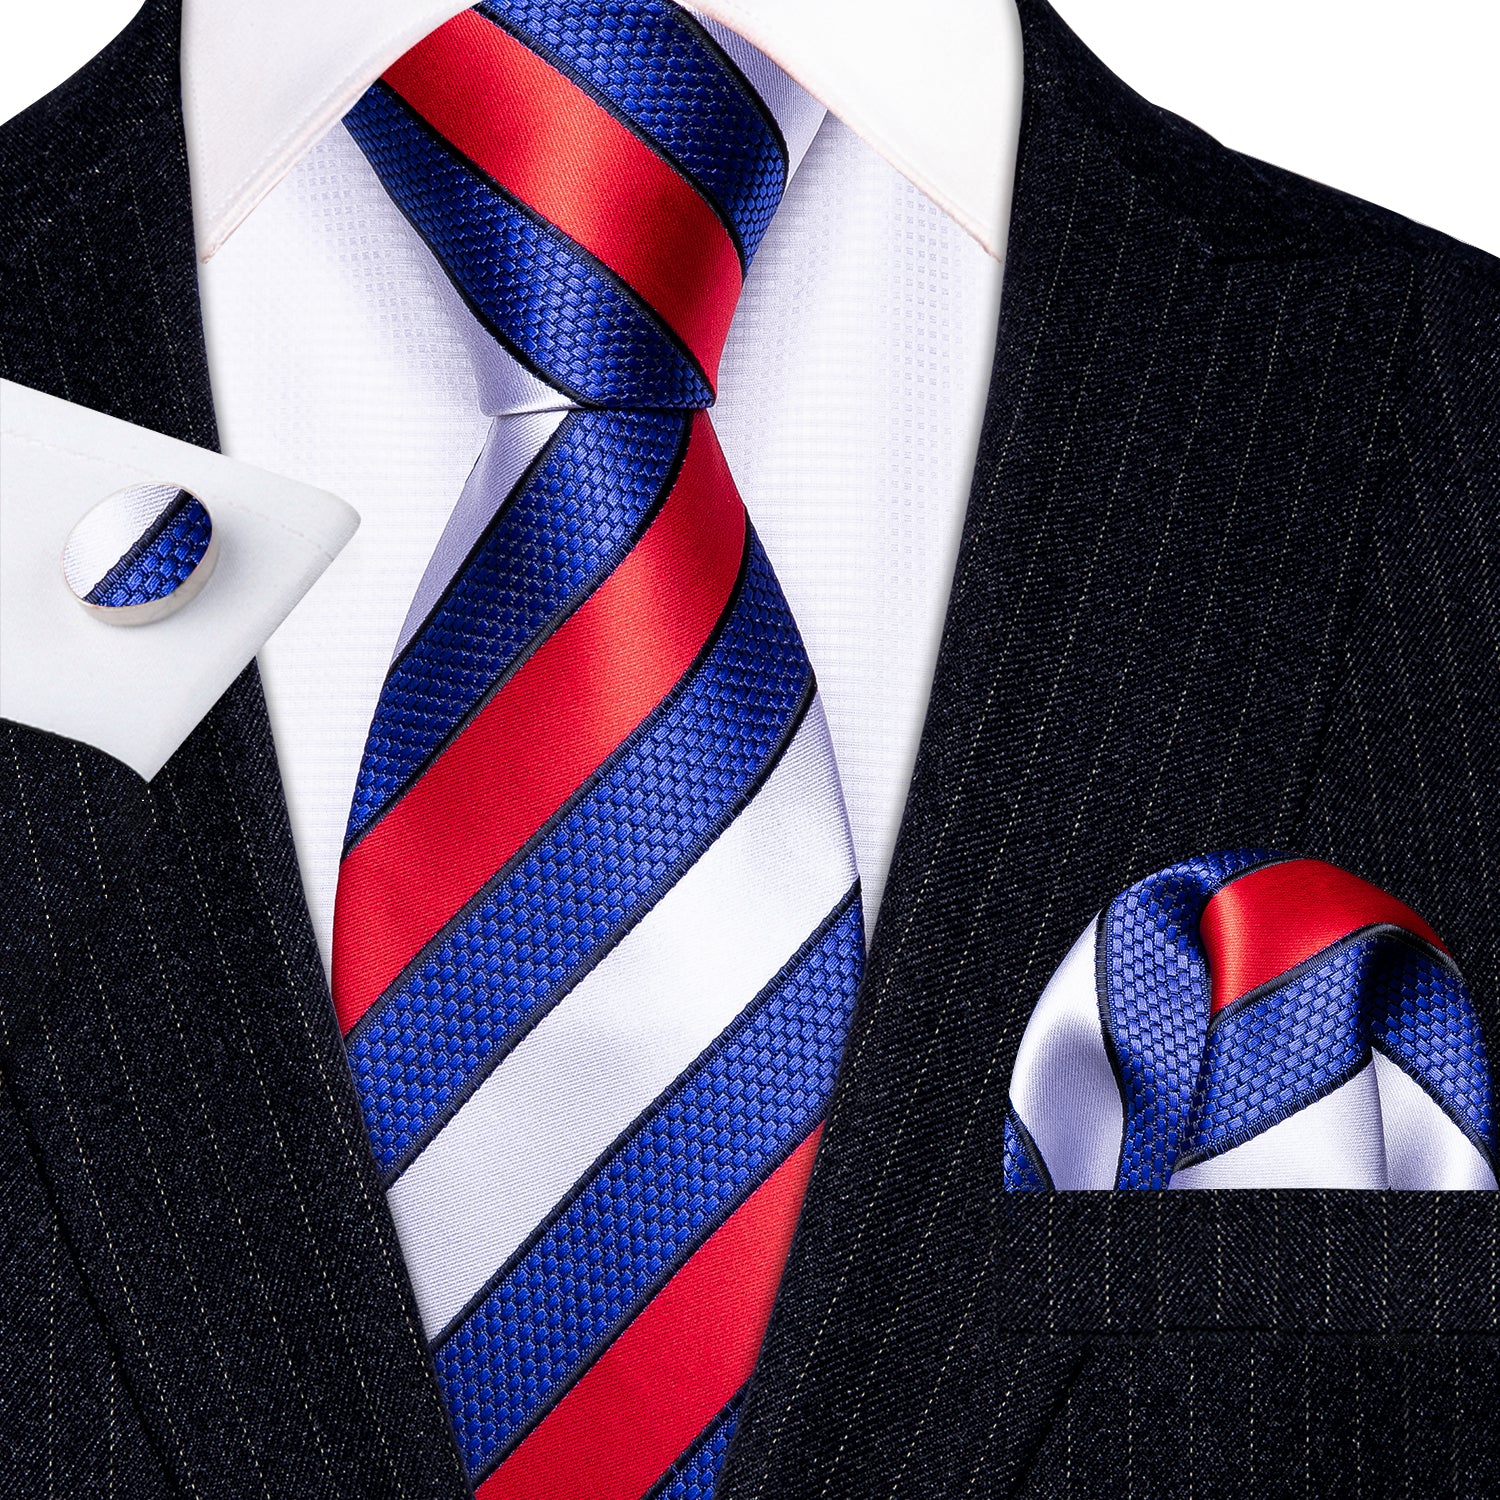 Barry.wang Men's Tie Red White Blue Striped Silk Tie Hanky Cufflinks Set